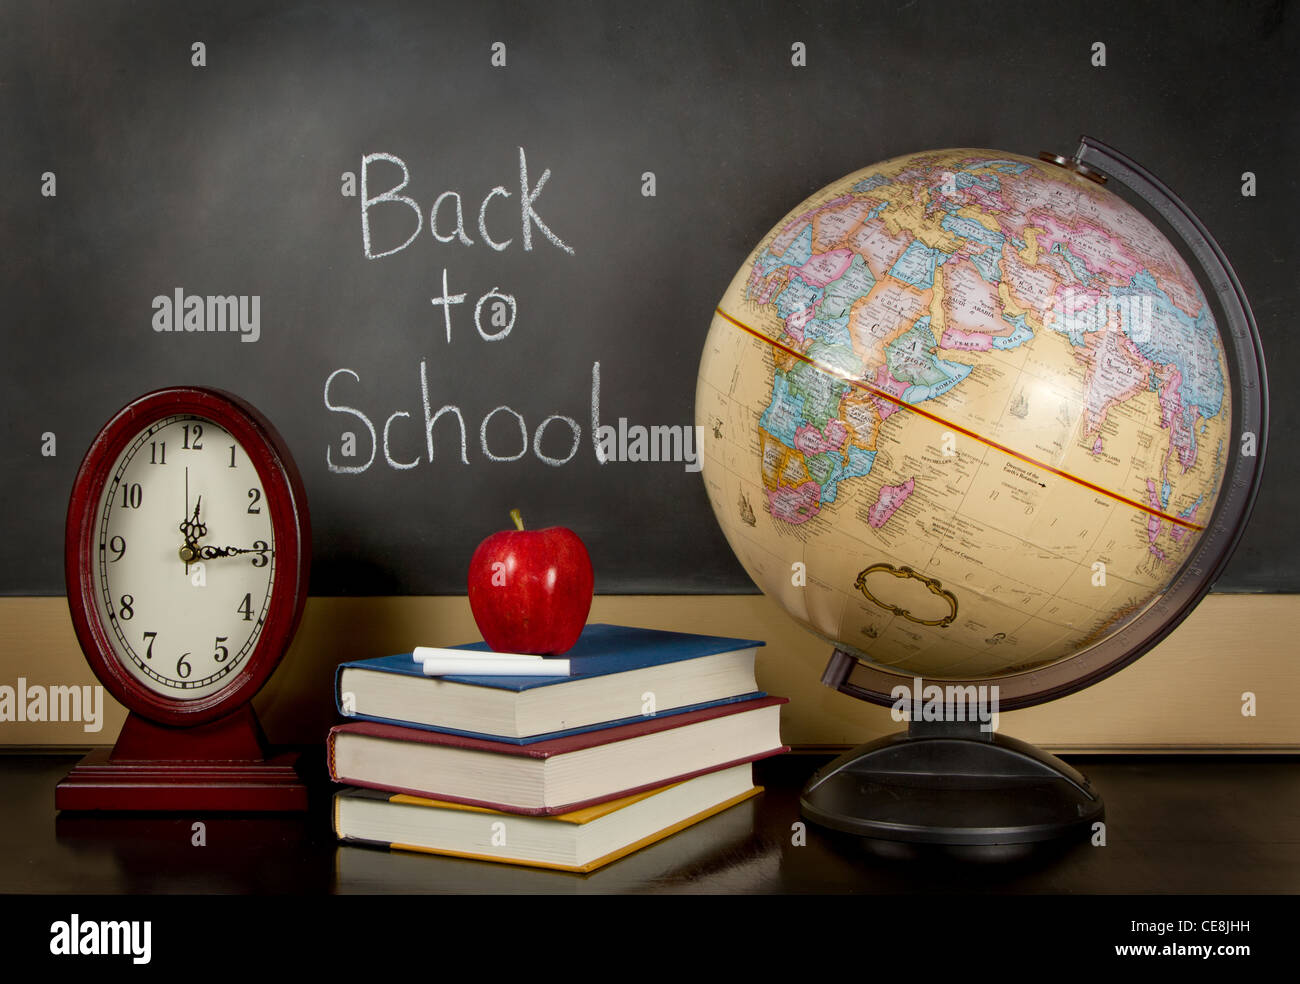 eine Tafel mit den Worten zurück in der Schule geschrieben, eine Uhr, Bücher, Apfel, Kreide und eine Kugel auf einem Lehrer Schreibtisch sitzen. Stockfoto